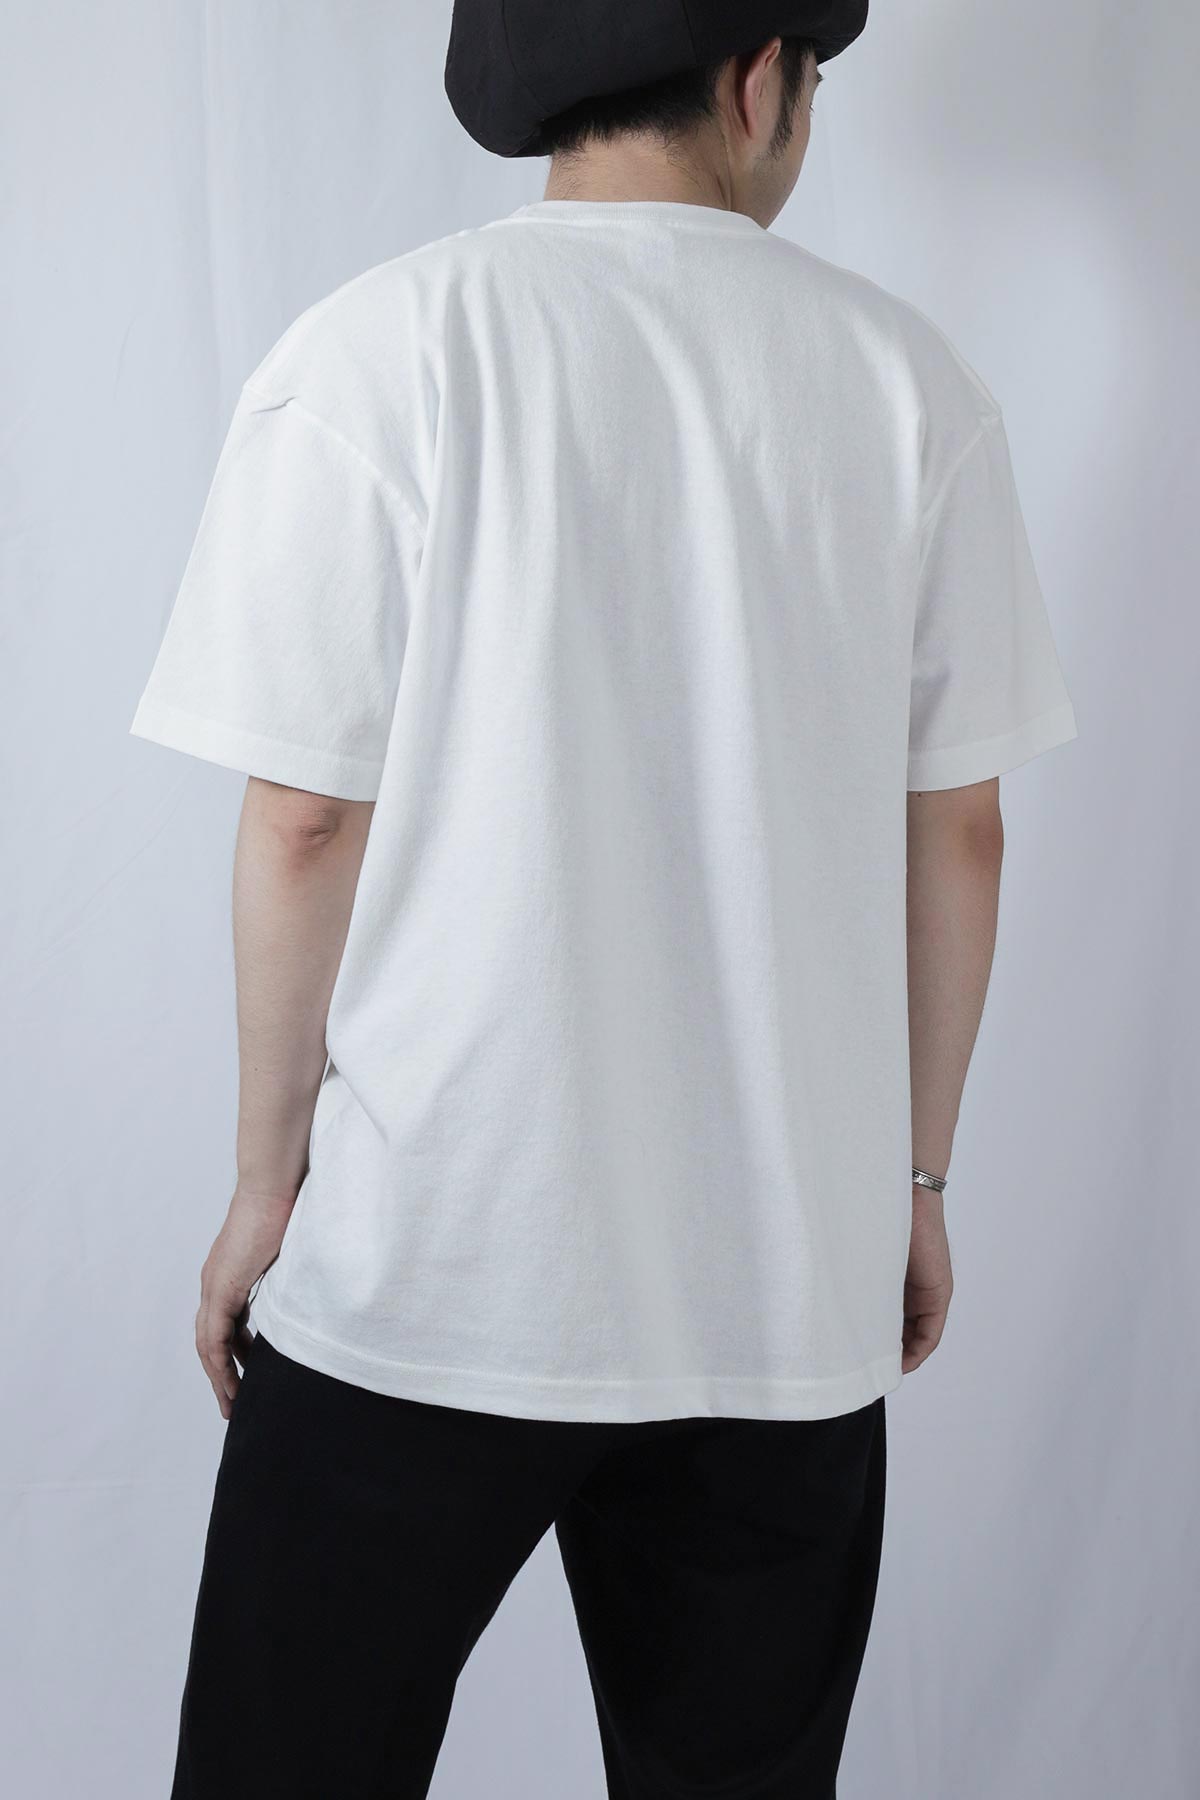 【受注生産】 XLサイズ ポケットTシャツ 